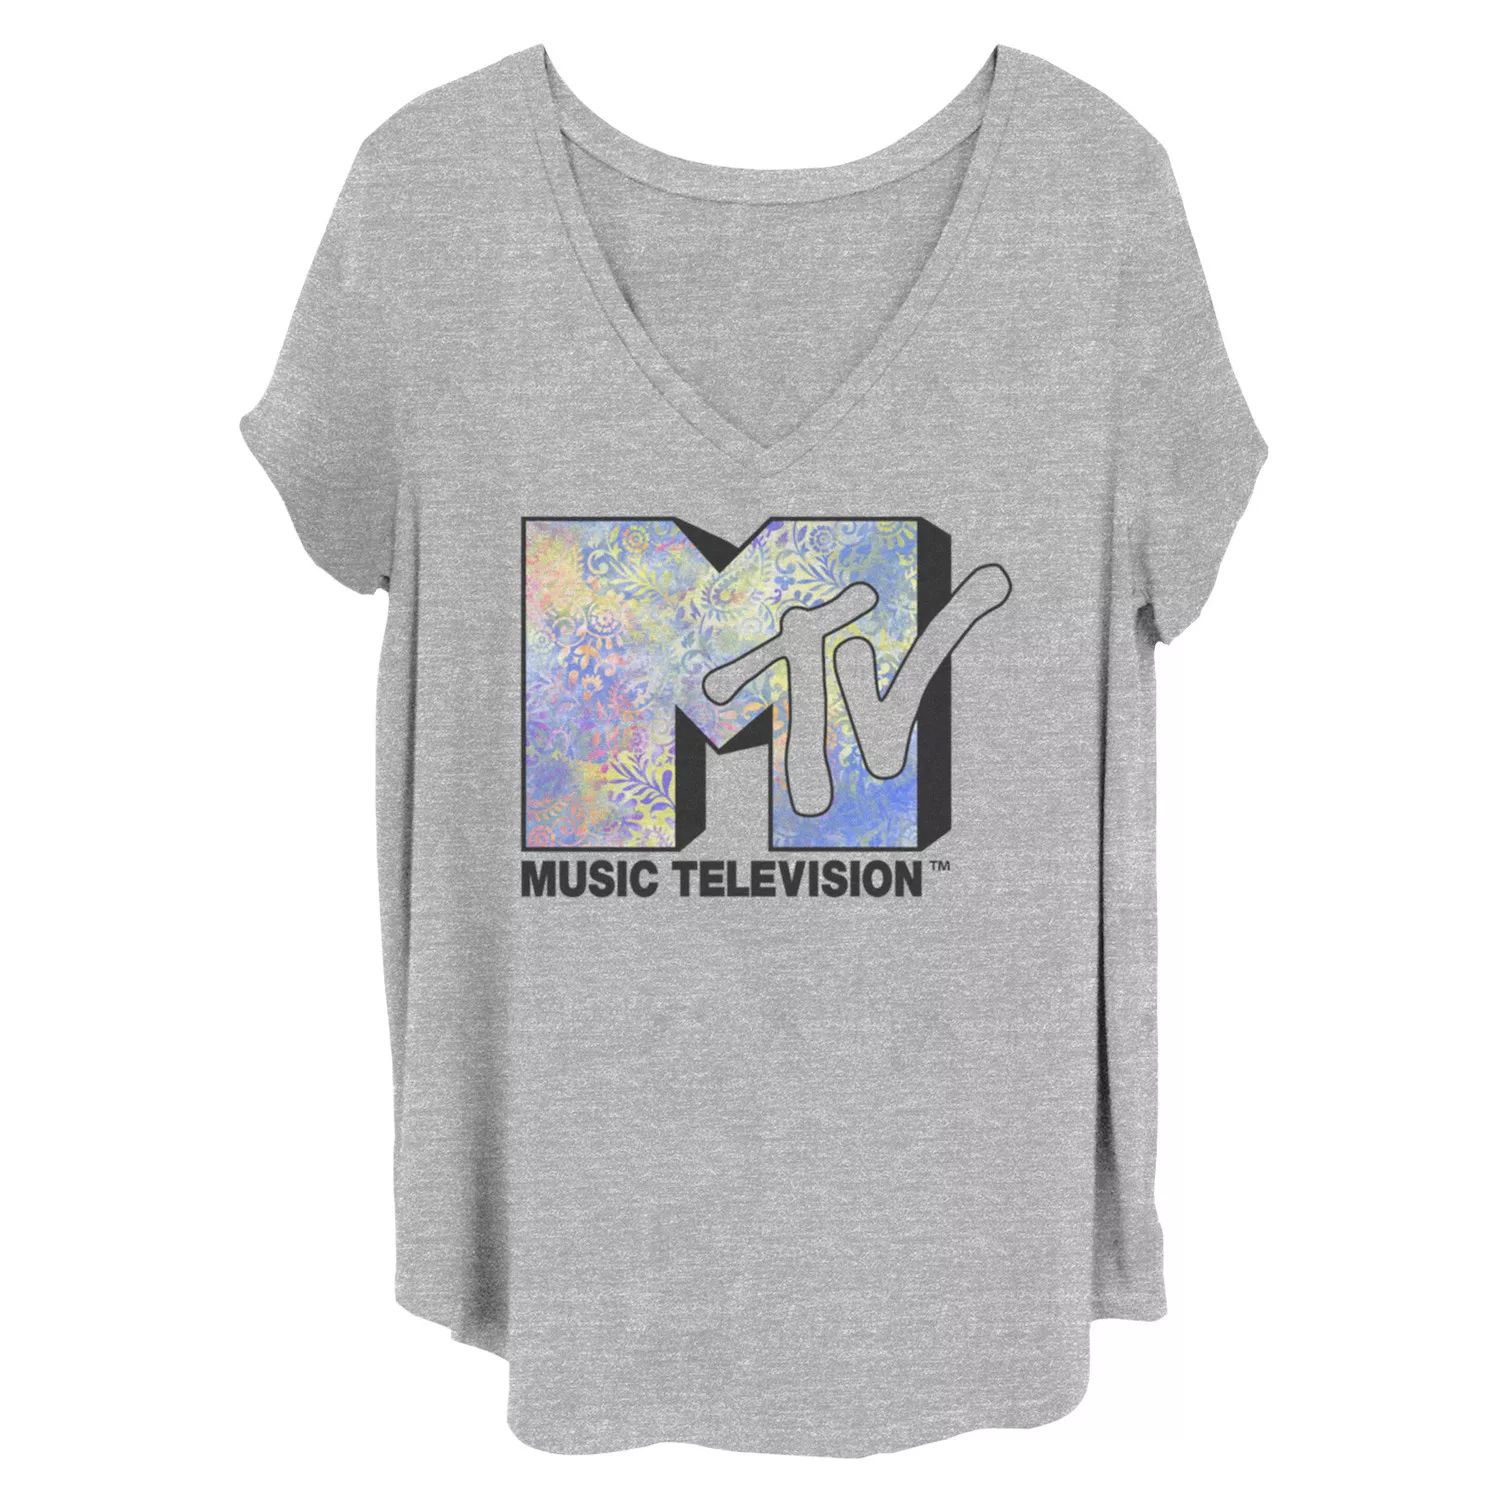 Детская футболка больших размеров с логотипом MTV Licensed Character